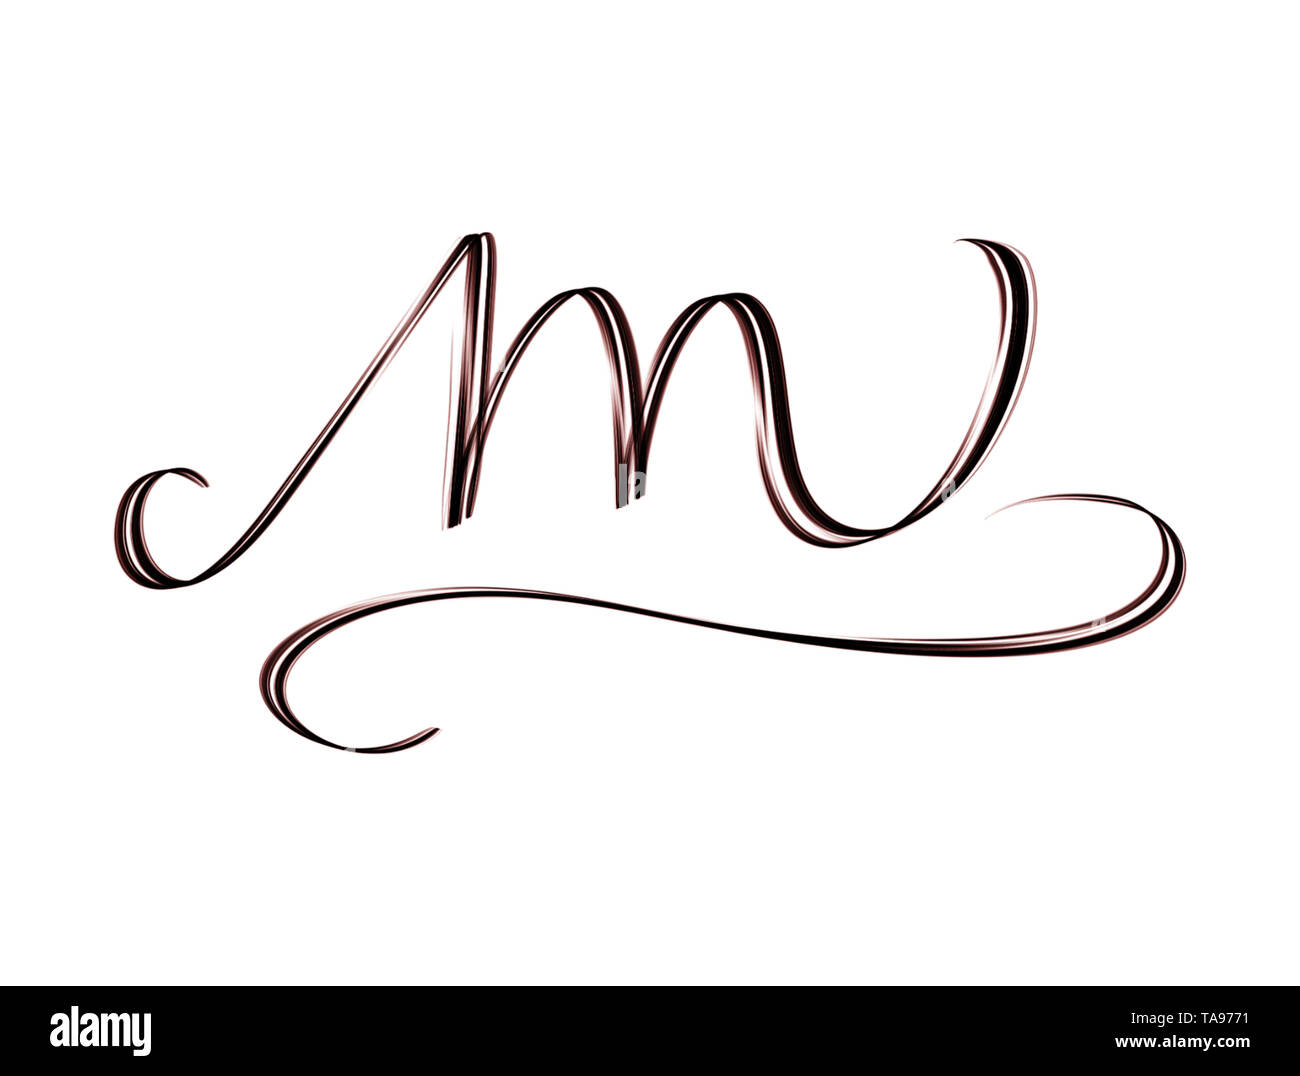 Lettre m - monogramme élégant hand drawn isolé sur fond blanc Banque D'Images